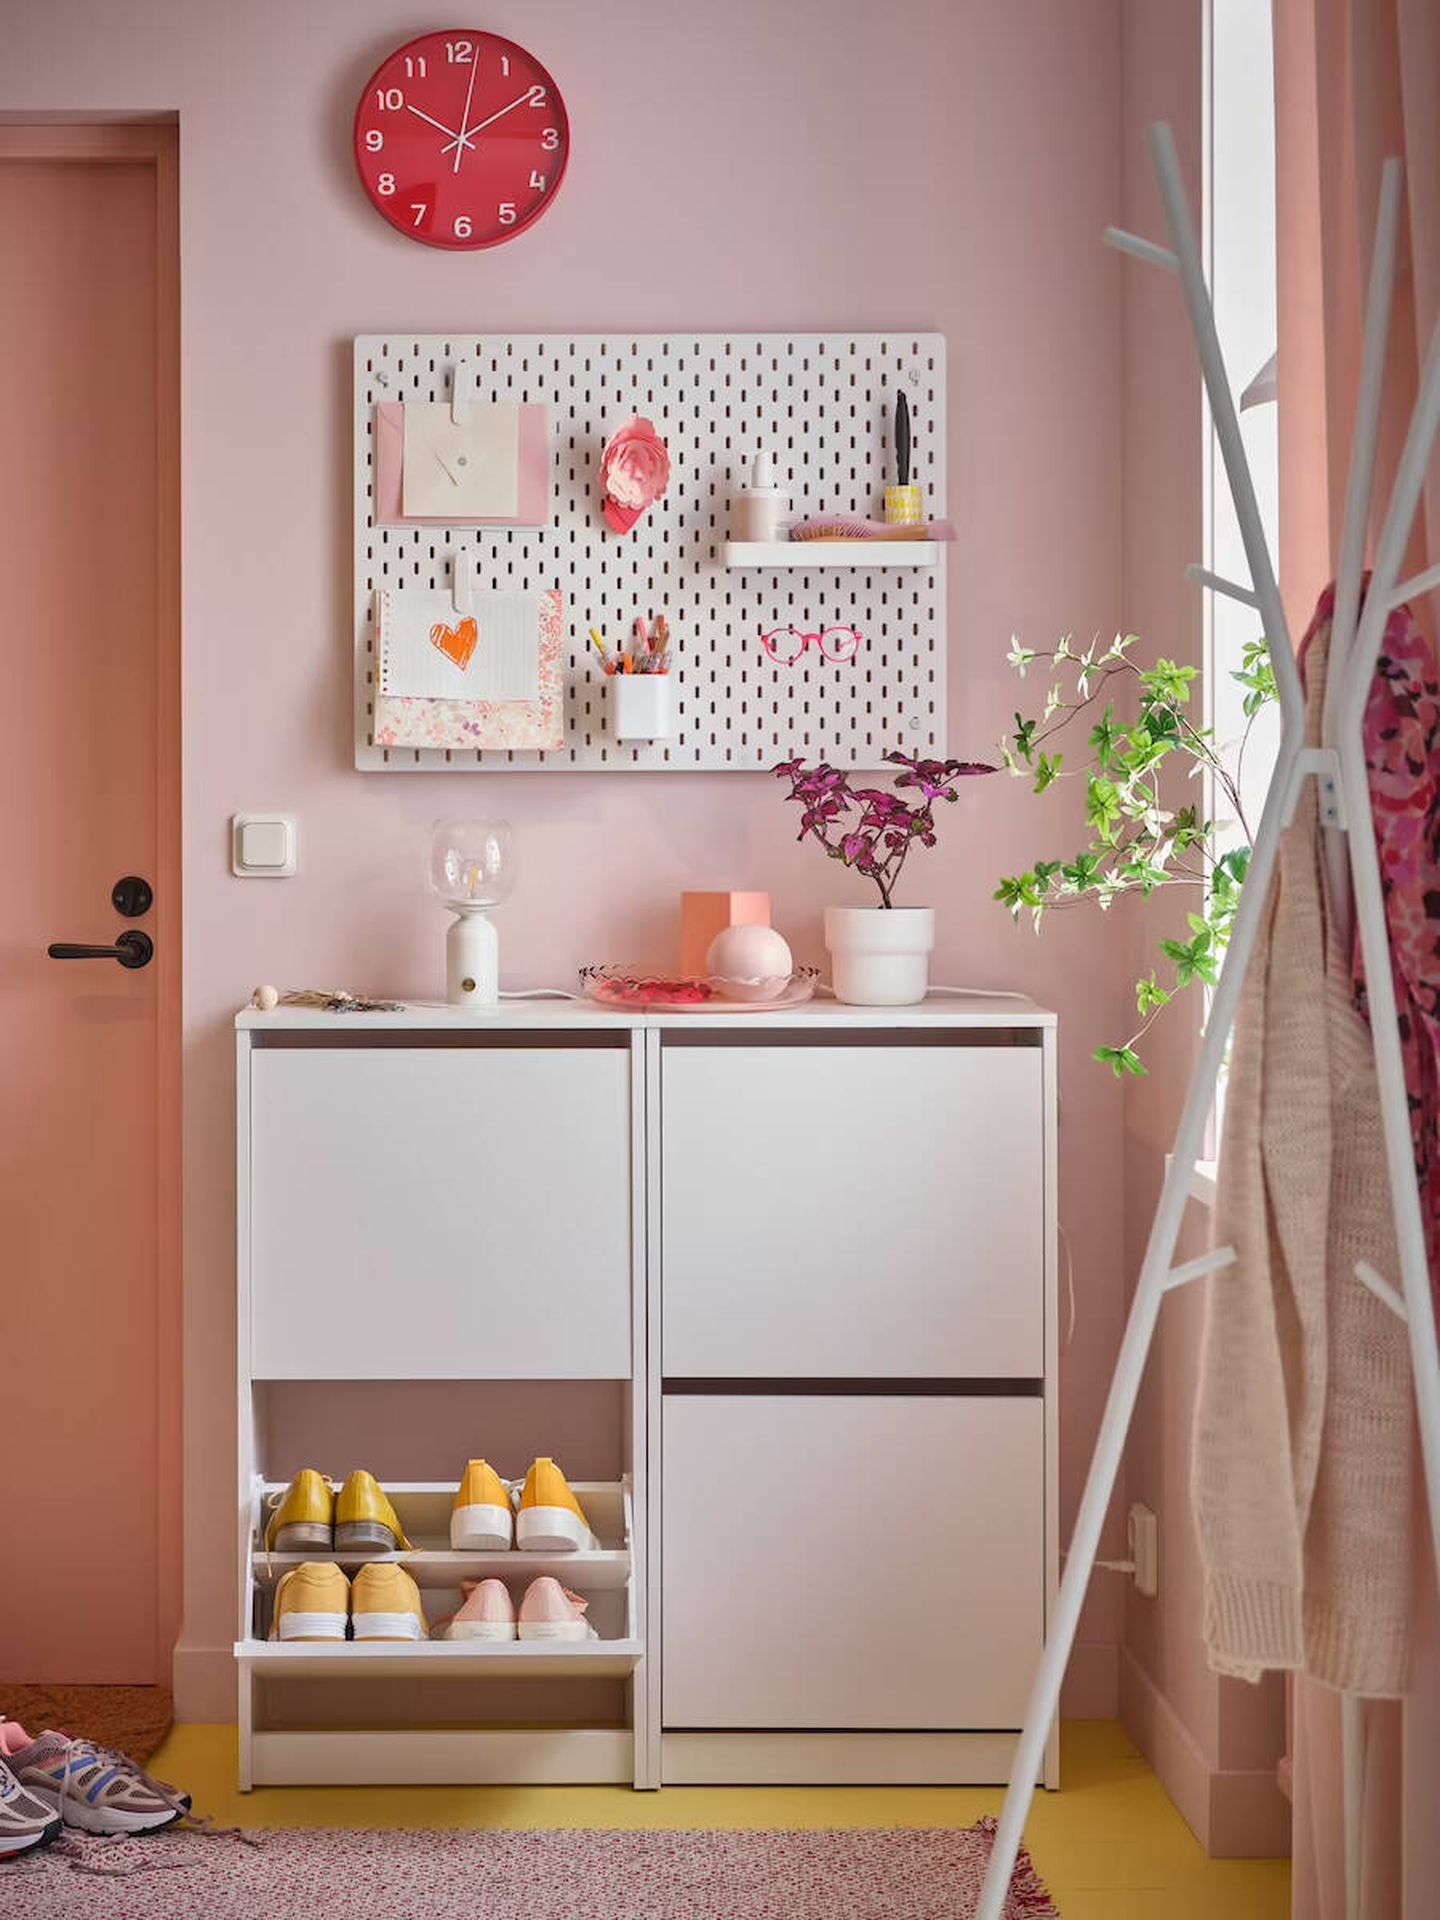 Soluciones decorativas para una casa ordenada. (Cortesía/Ikea)